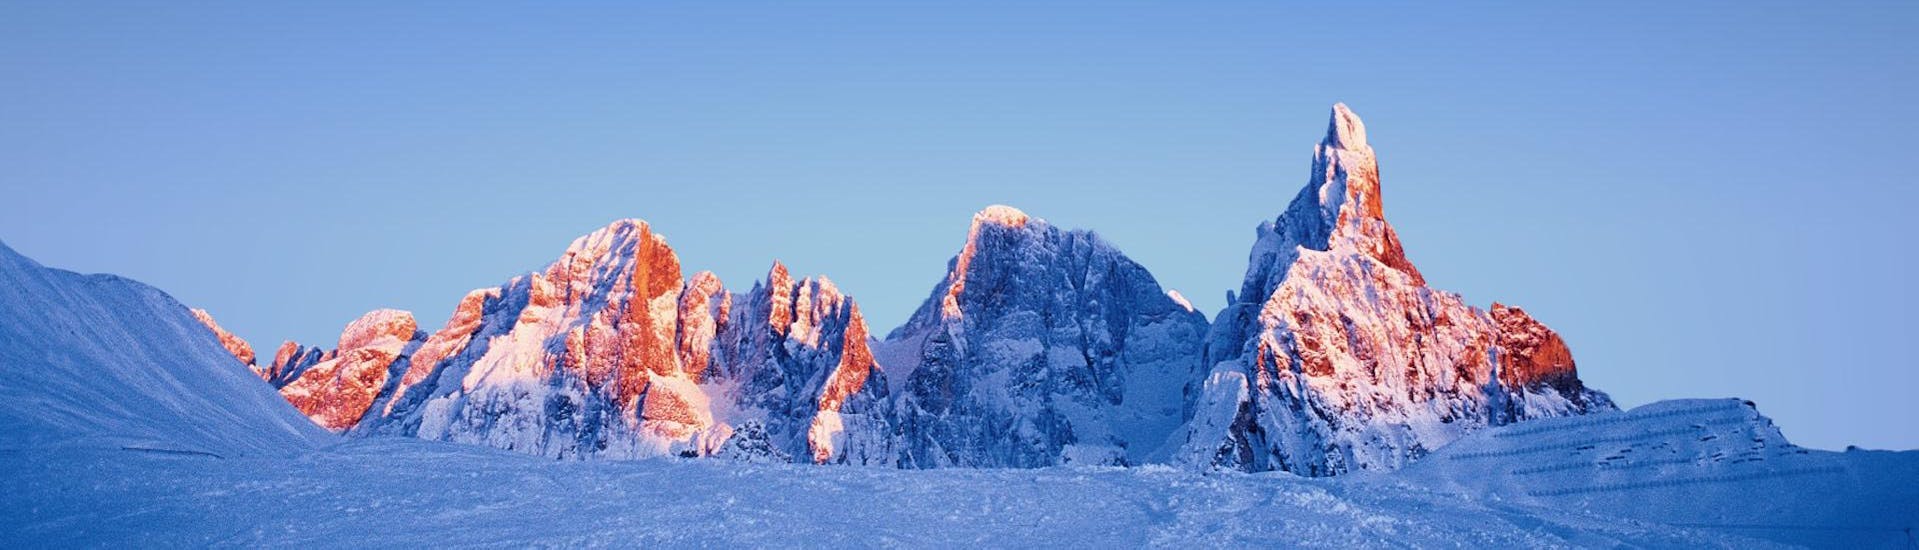 Beautiful view of the Dolomites from San Martino di Castrozza durante una lezione di sci con Scuola Italiana Sci Dolomiti San Martino di Castrozza.